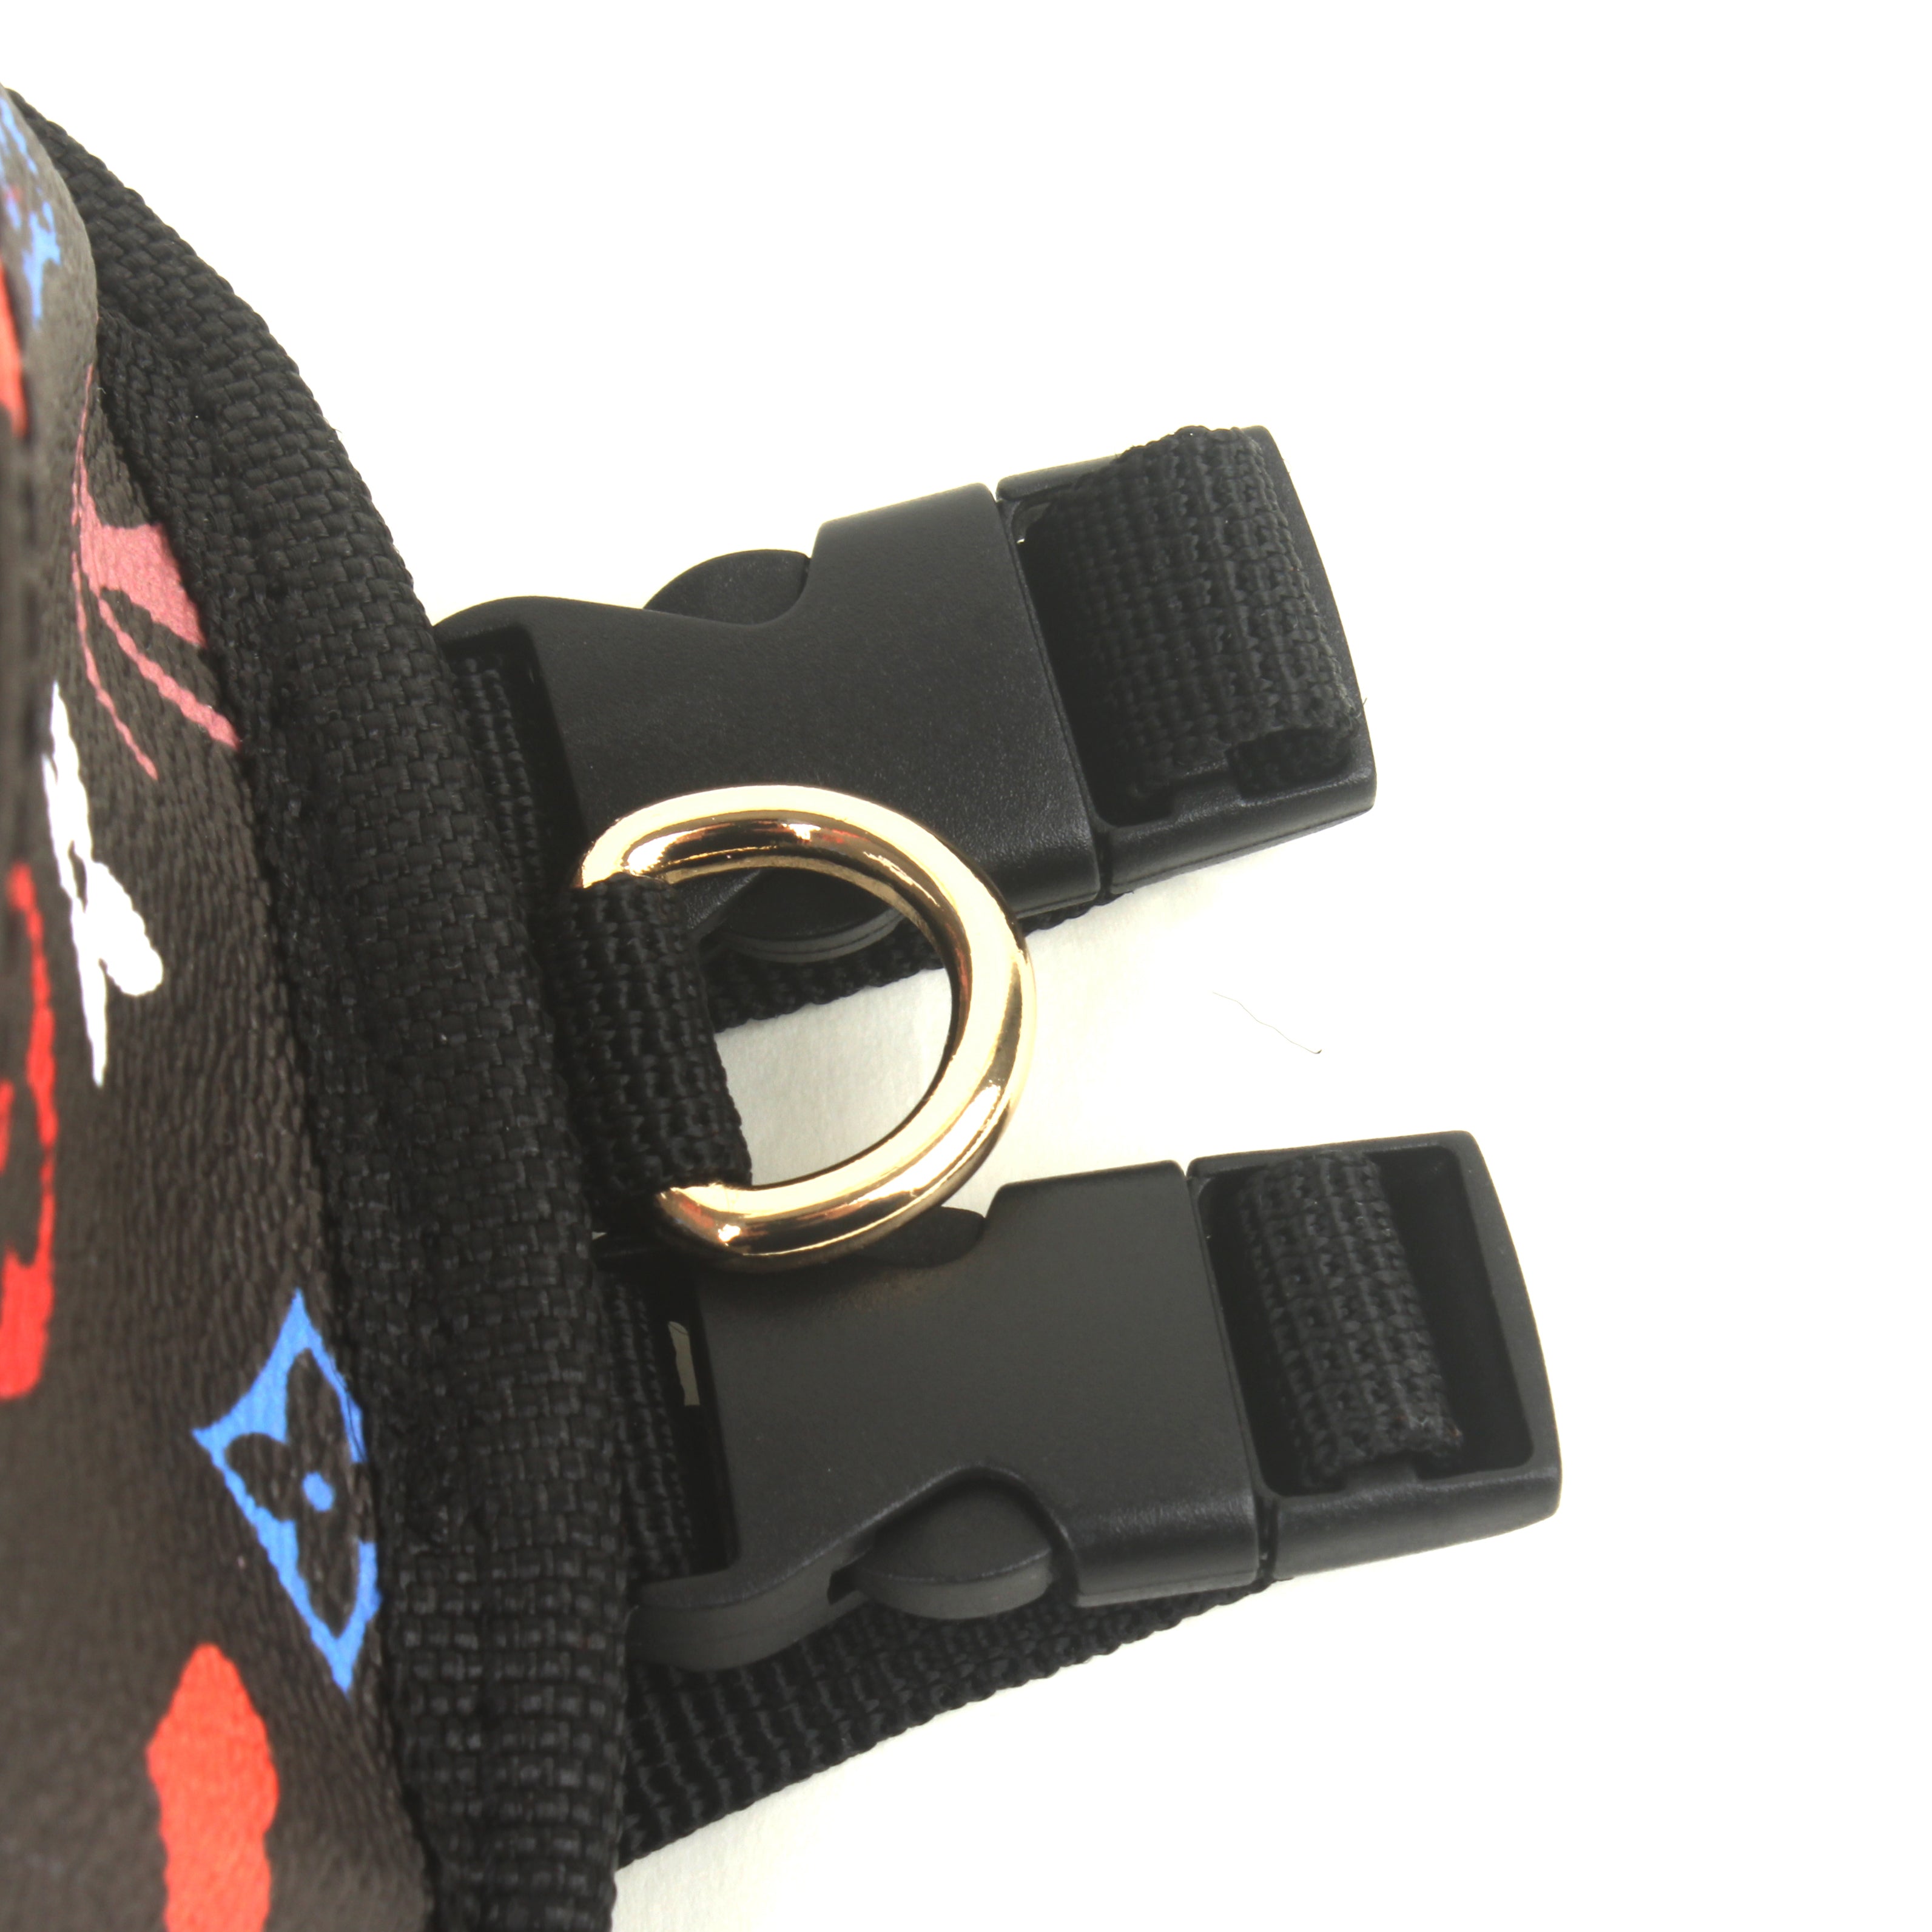 Louis Vuitton, Dog, Lv Design Dog Backpack Harness Nwot